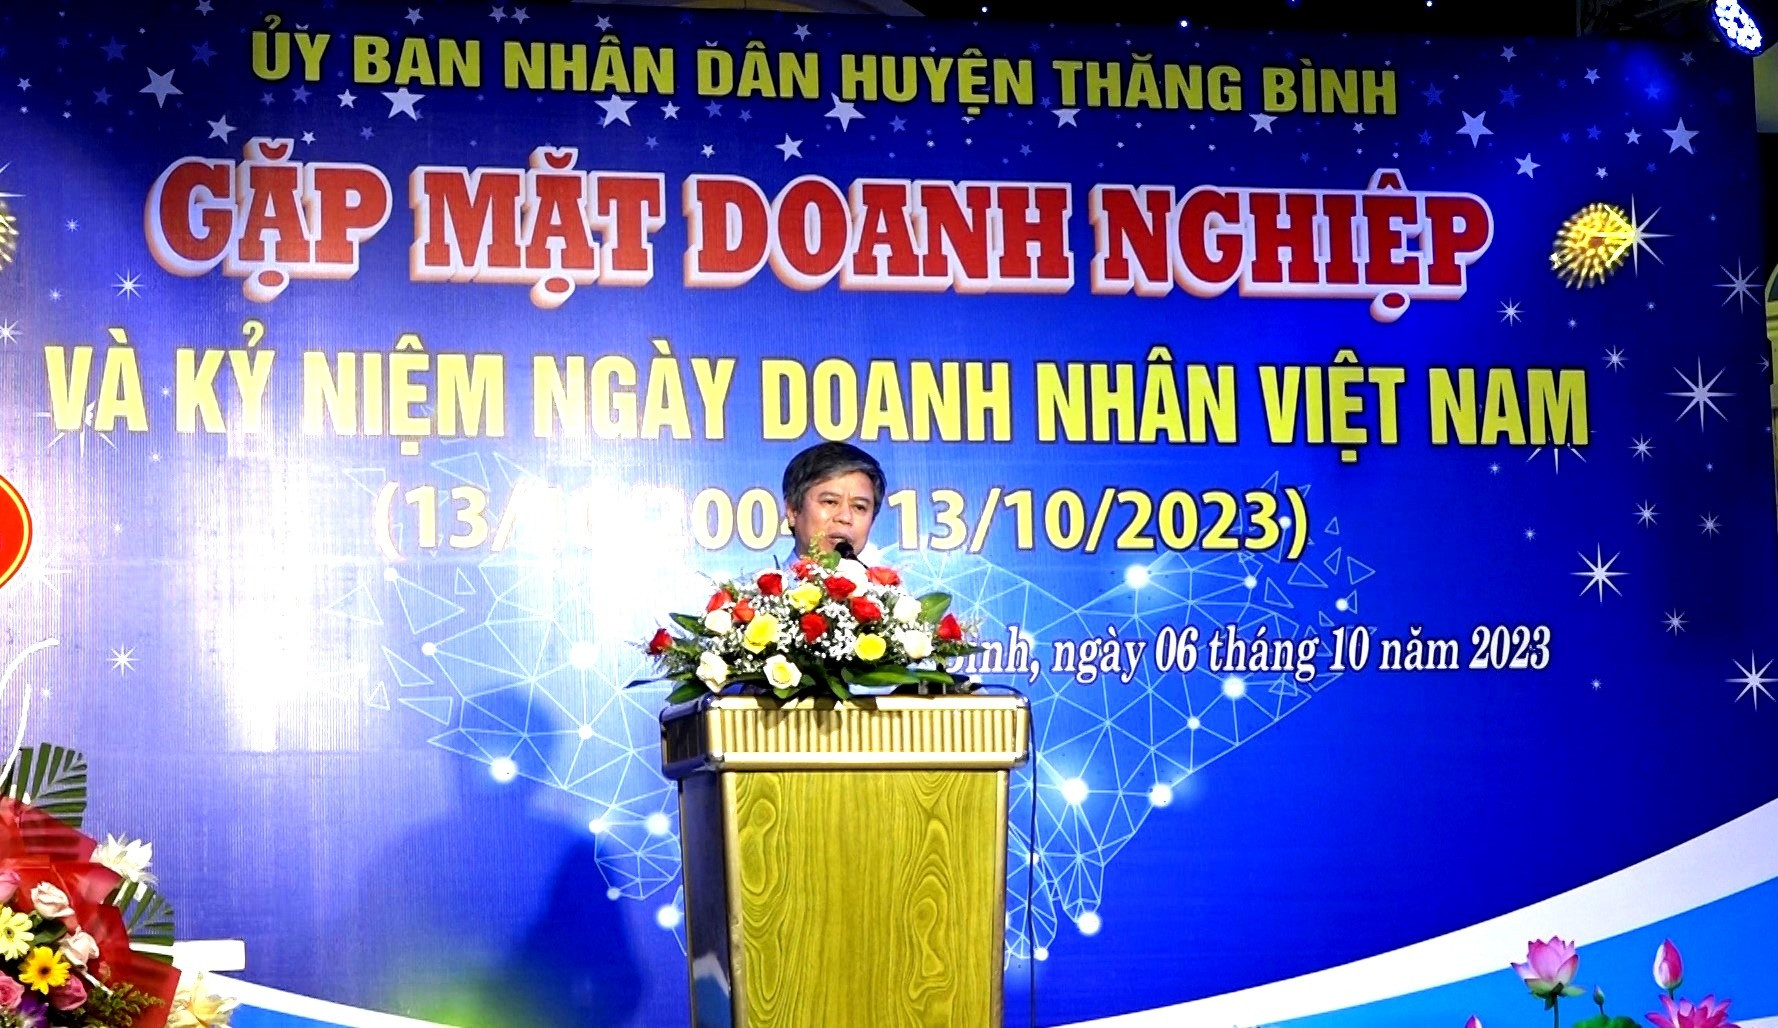 Ông Võ Văn Hùng - Chủ tịch UBND huyện Thăng Bình ghi nhận những đóng góp của cộng đồng doanh nghiệp trên địa bàn. Ảnh: Q.VIỆT